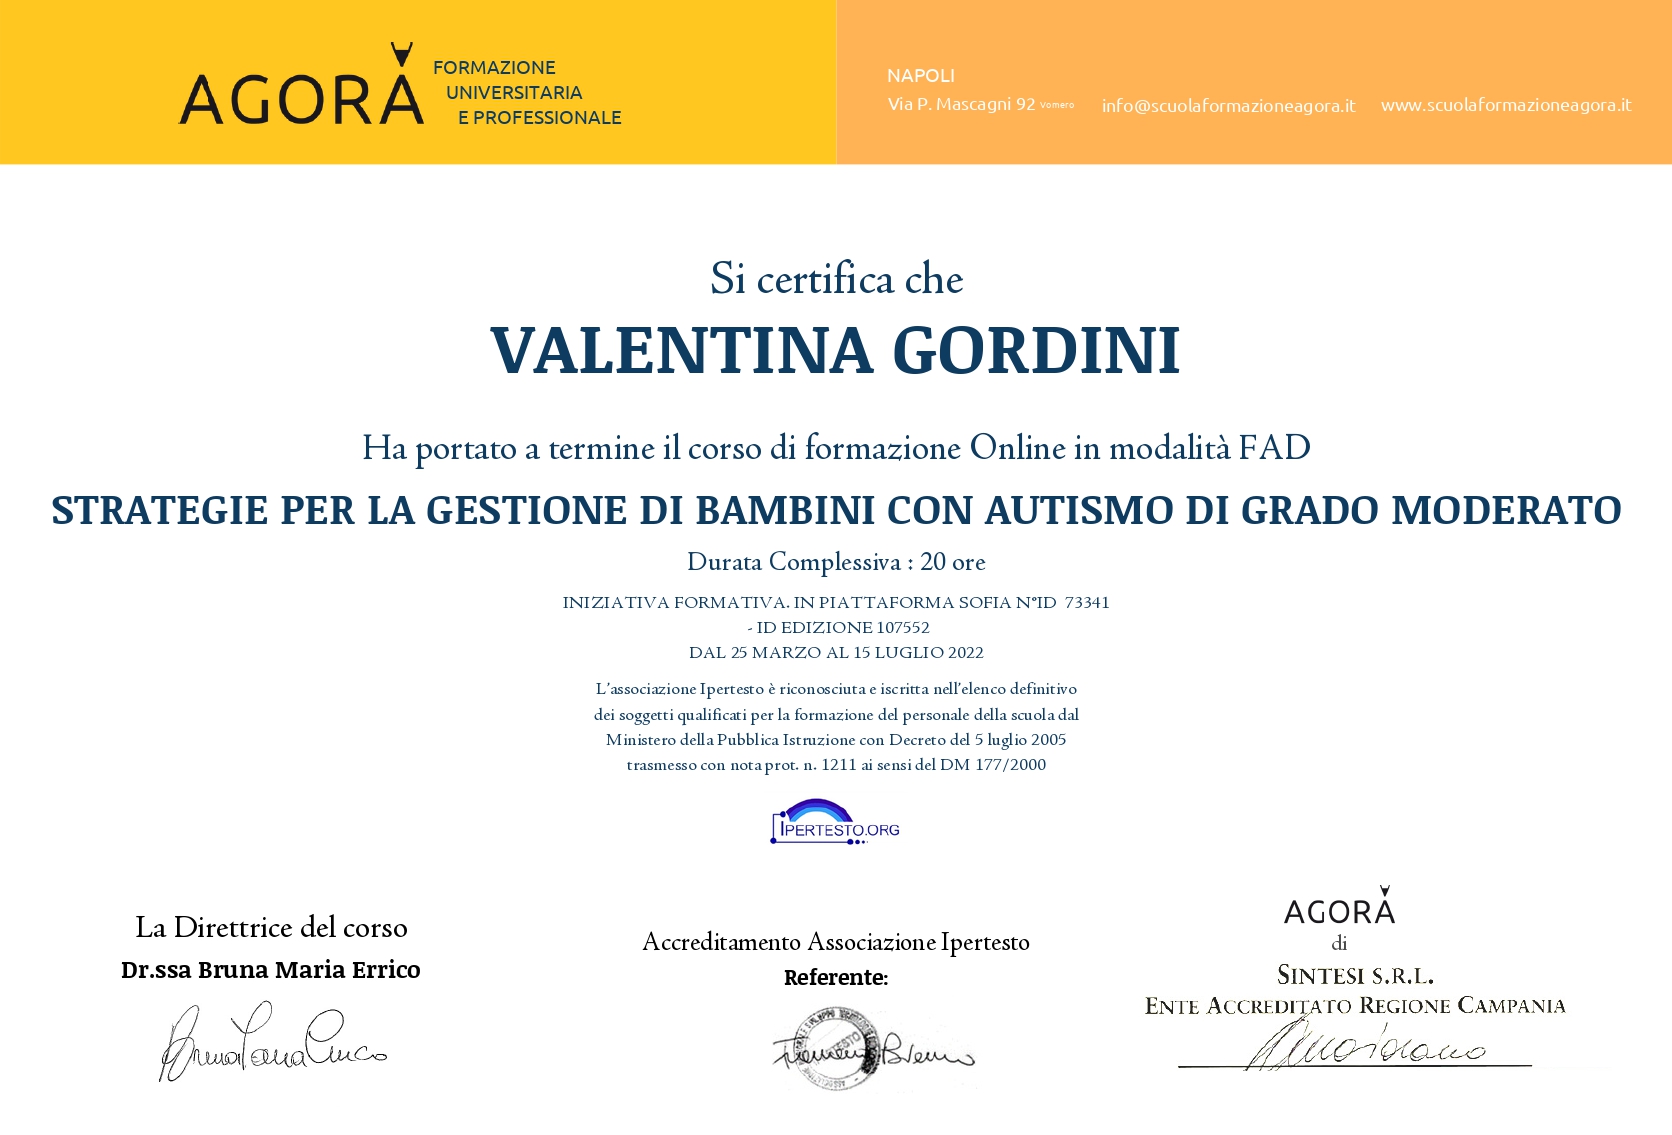 Autismo moderato VALENTINA GORDINI page 0001